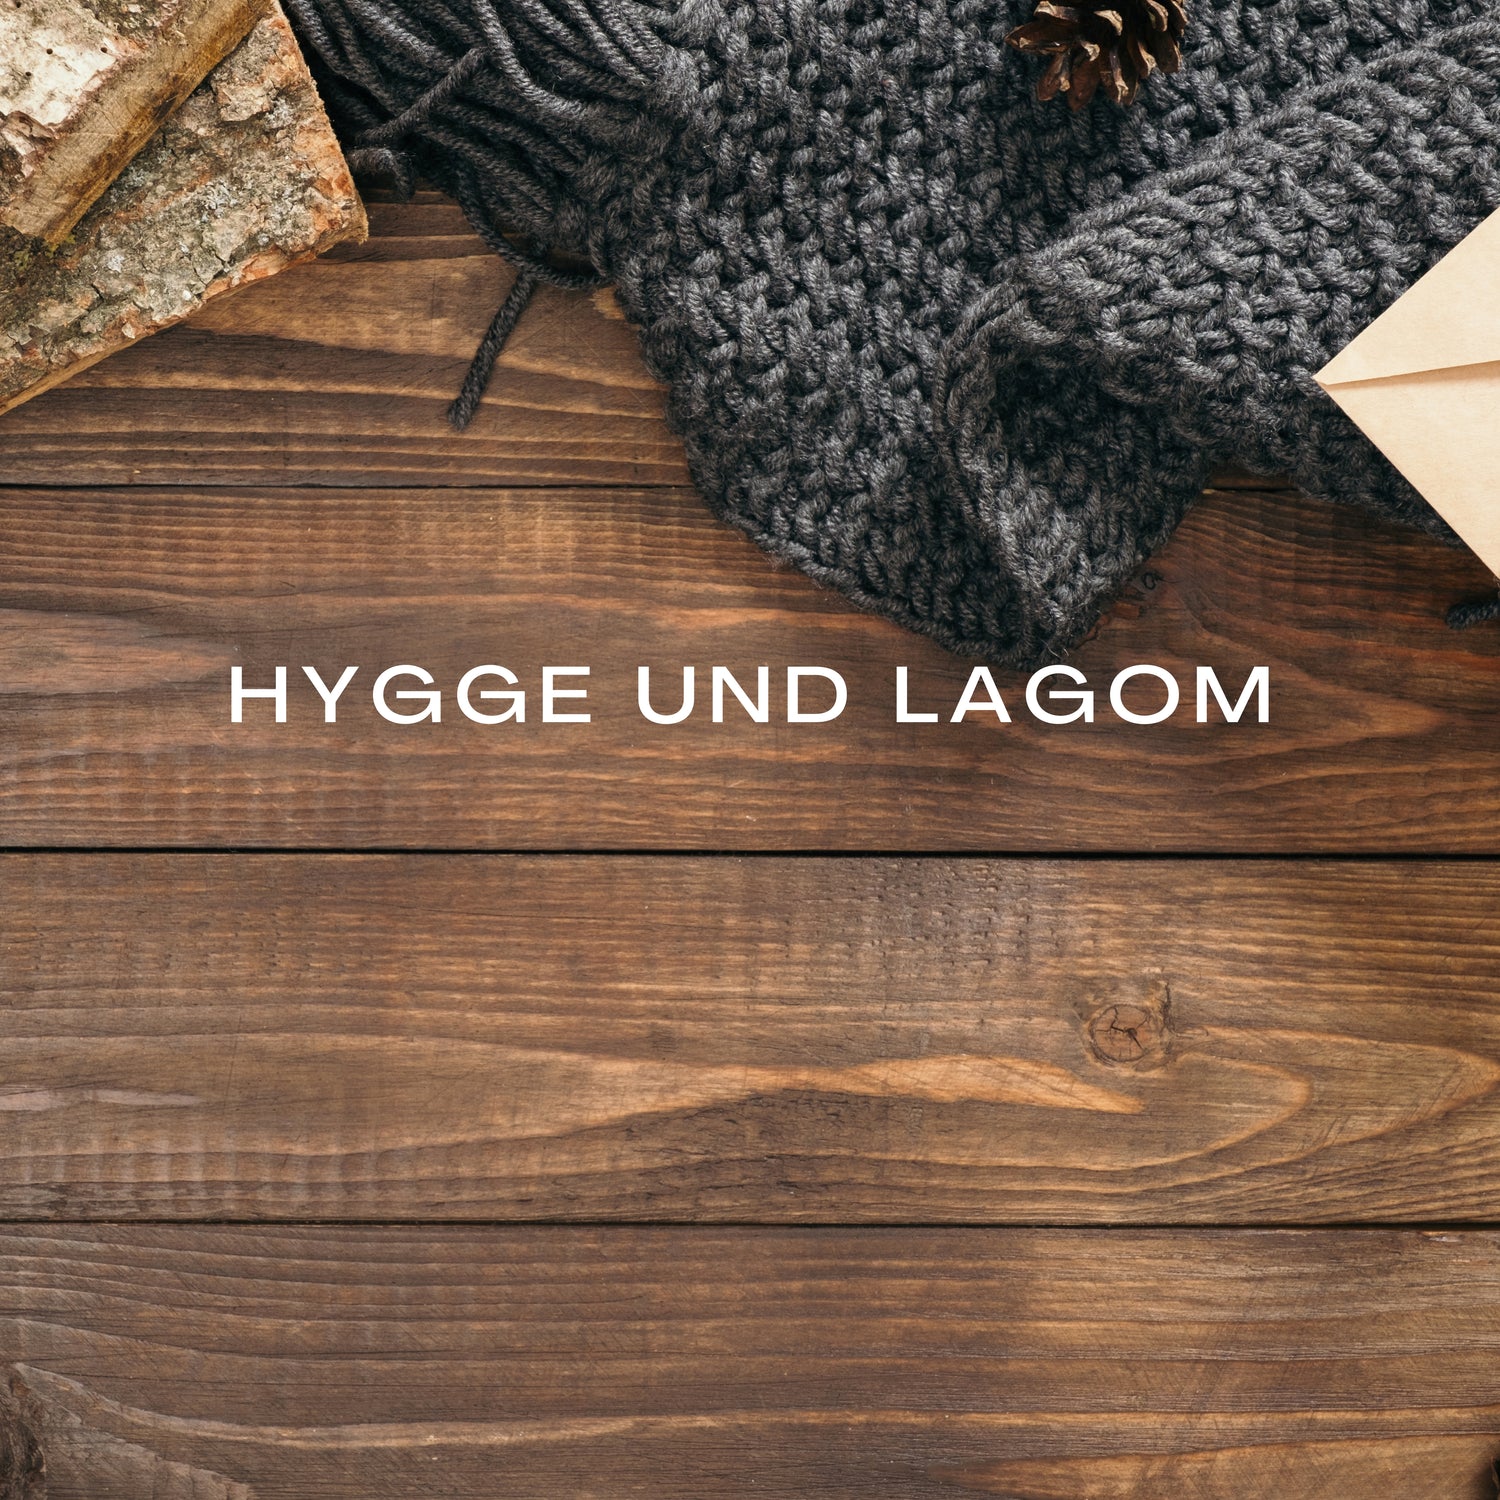 Hygge und Lagom